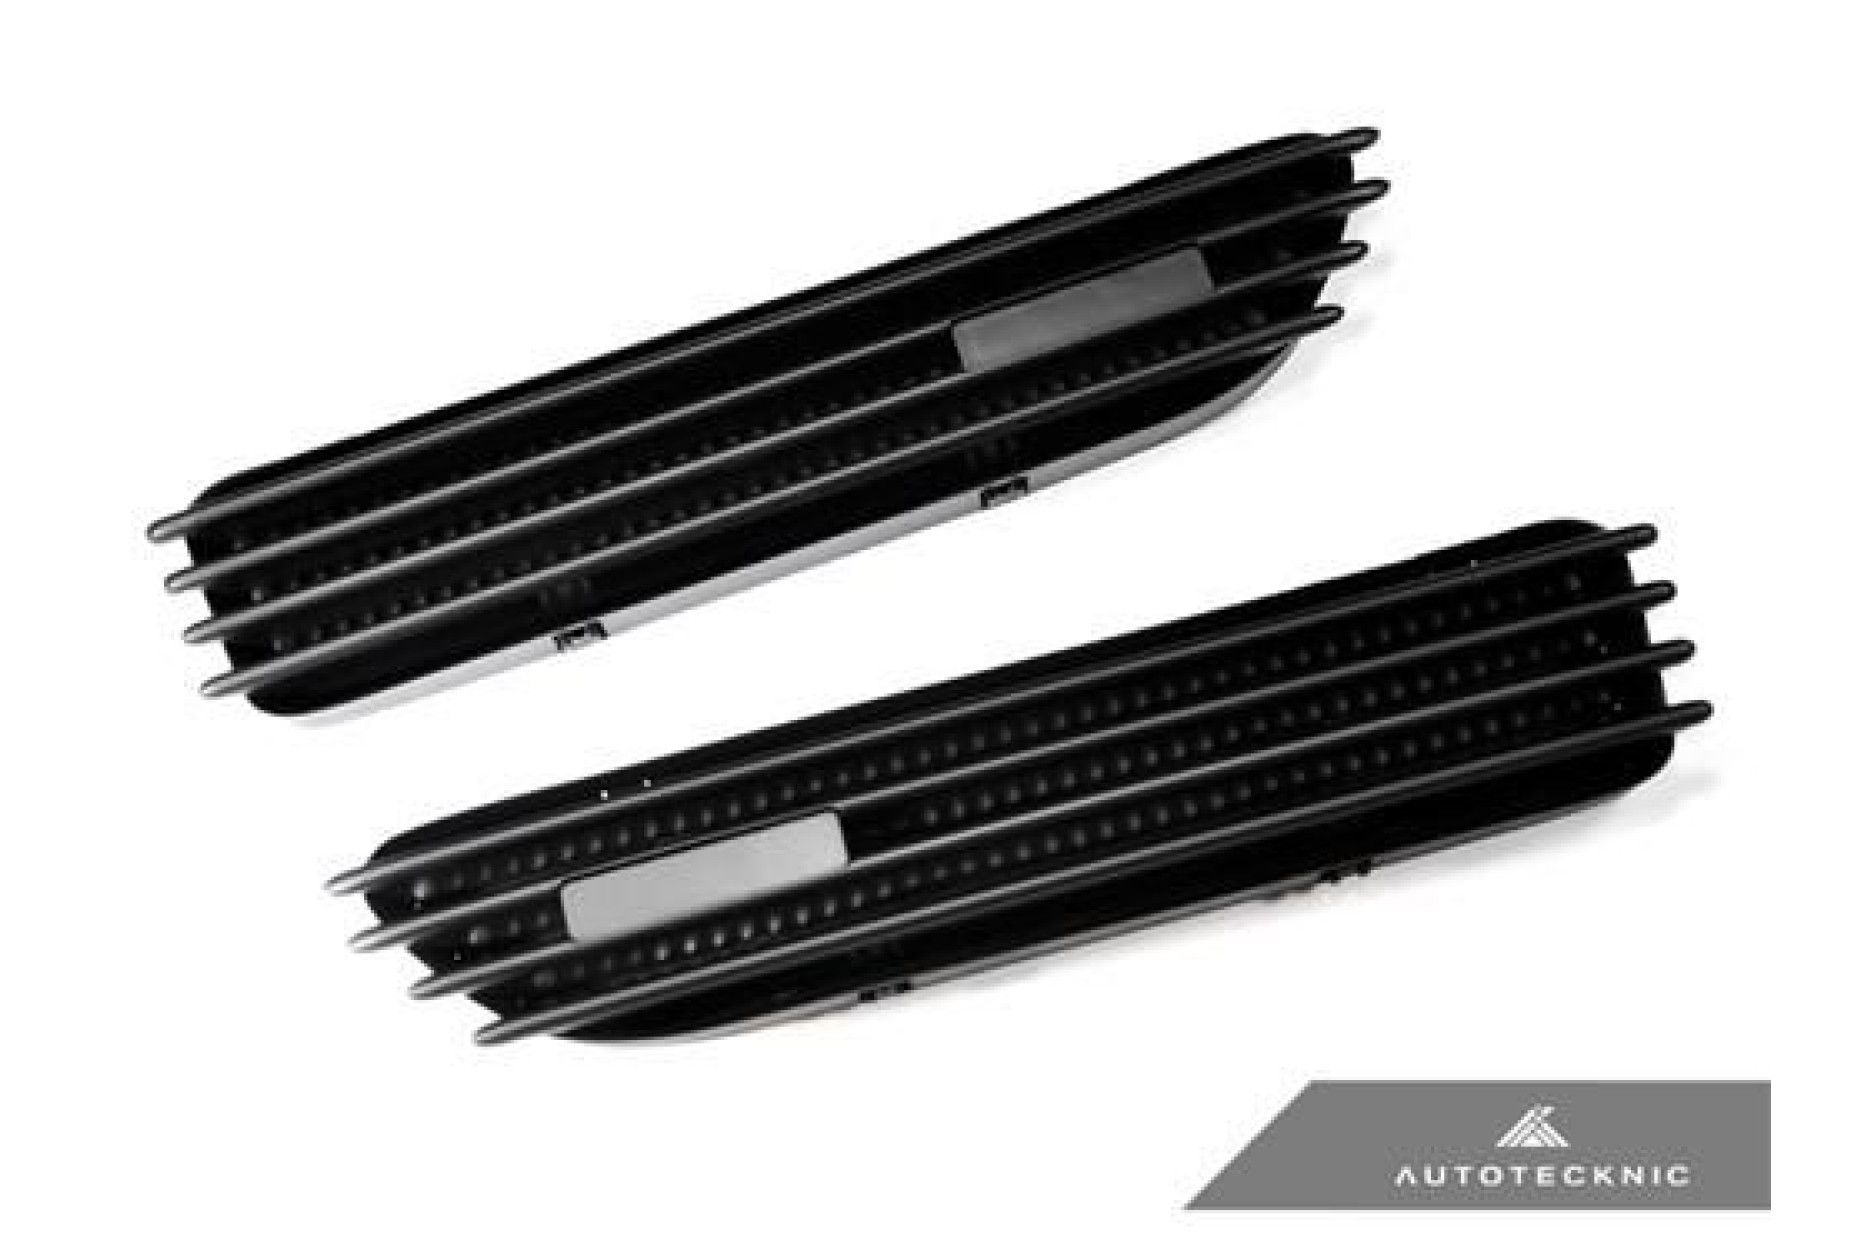 AutoTecknic Stealth Black Kotflügelgitter für E46 M3 - online kaufen bei CFD